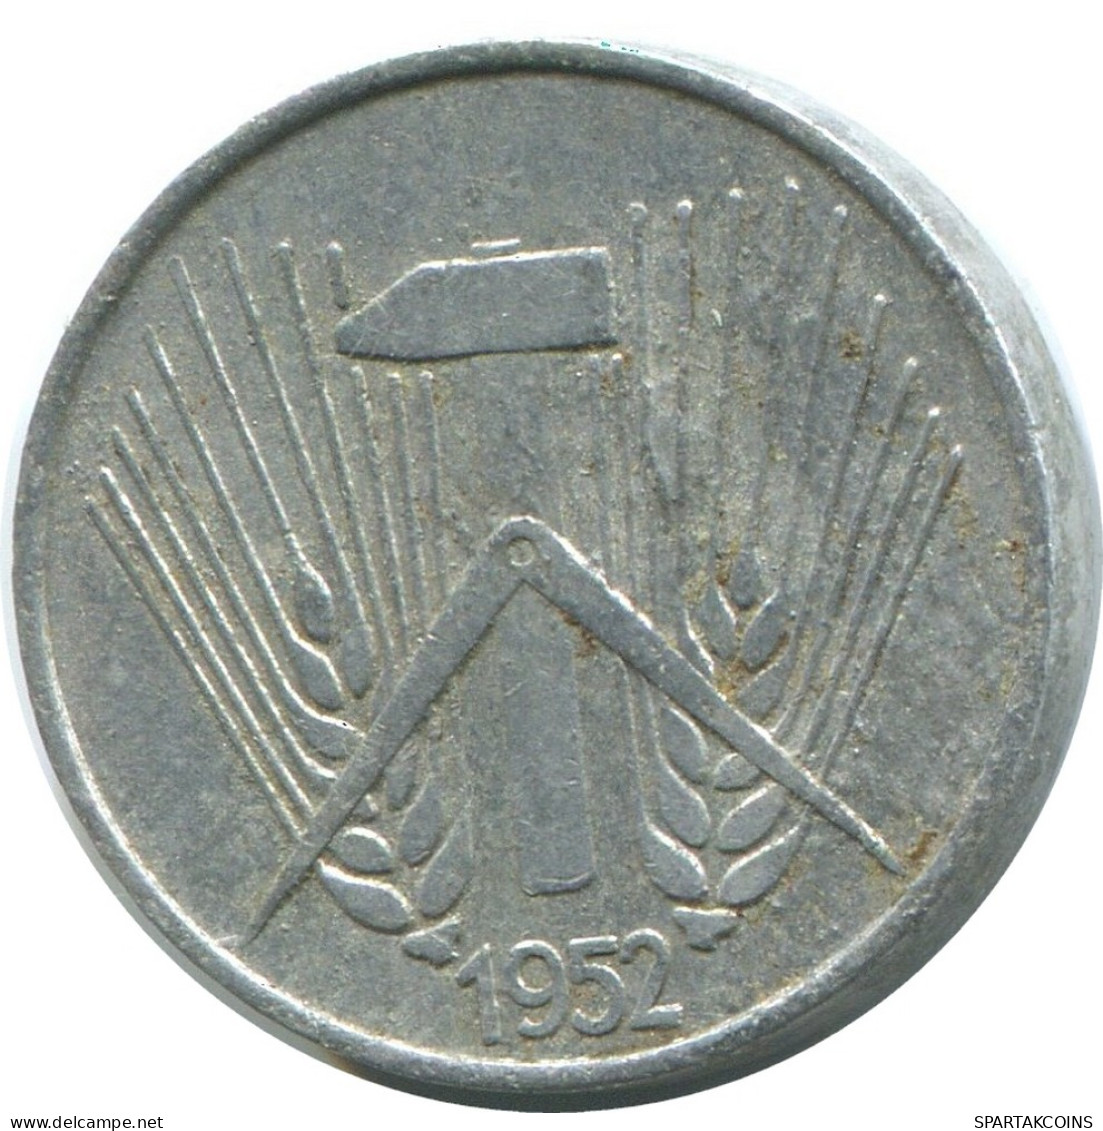 1 PFENNIG 1952 A DDR EAST ALEMANIA Moneda GERMANY #AD784.9.E - 1 Pfennig